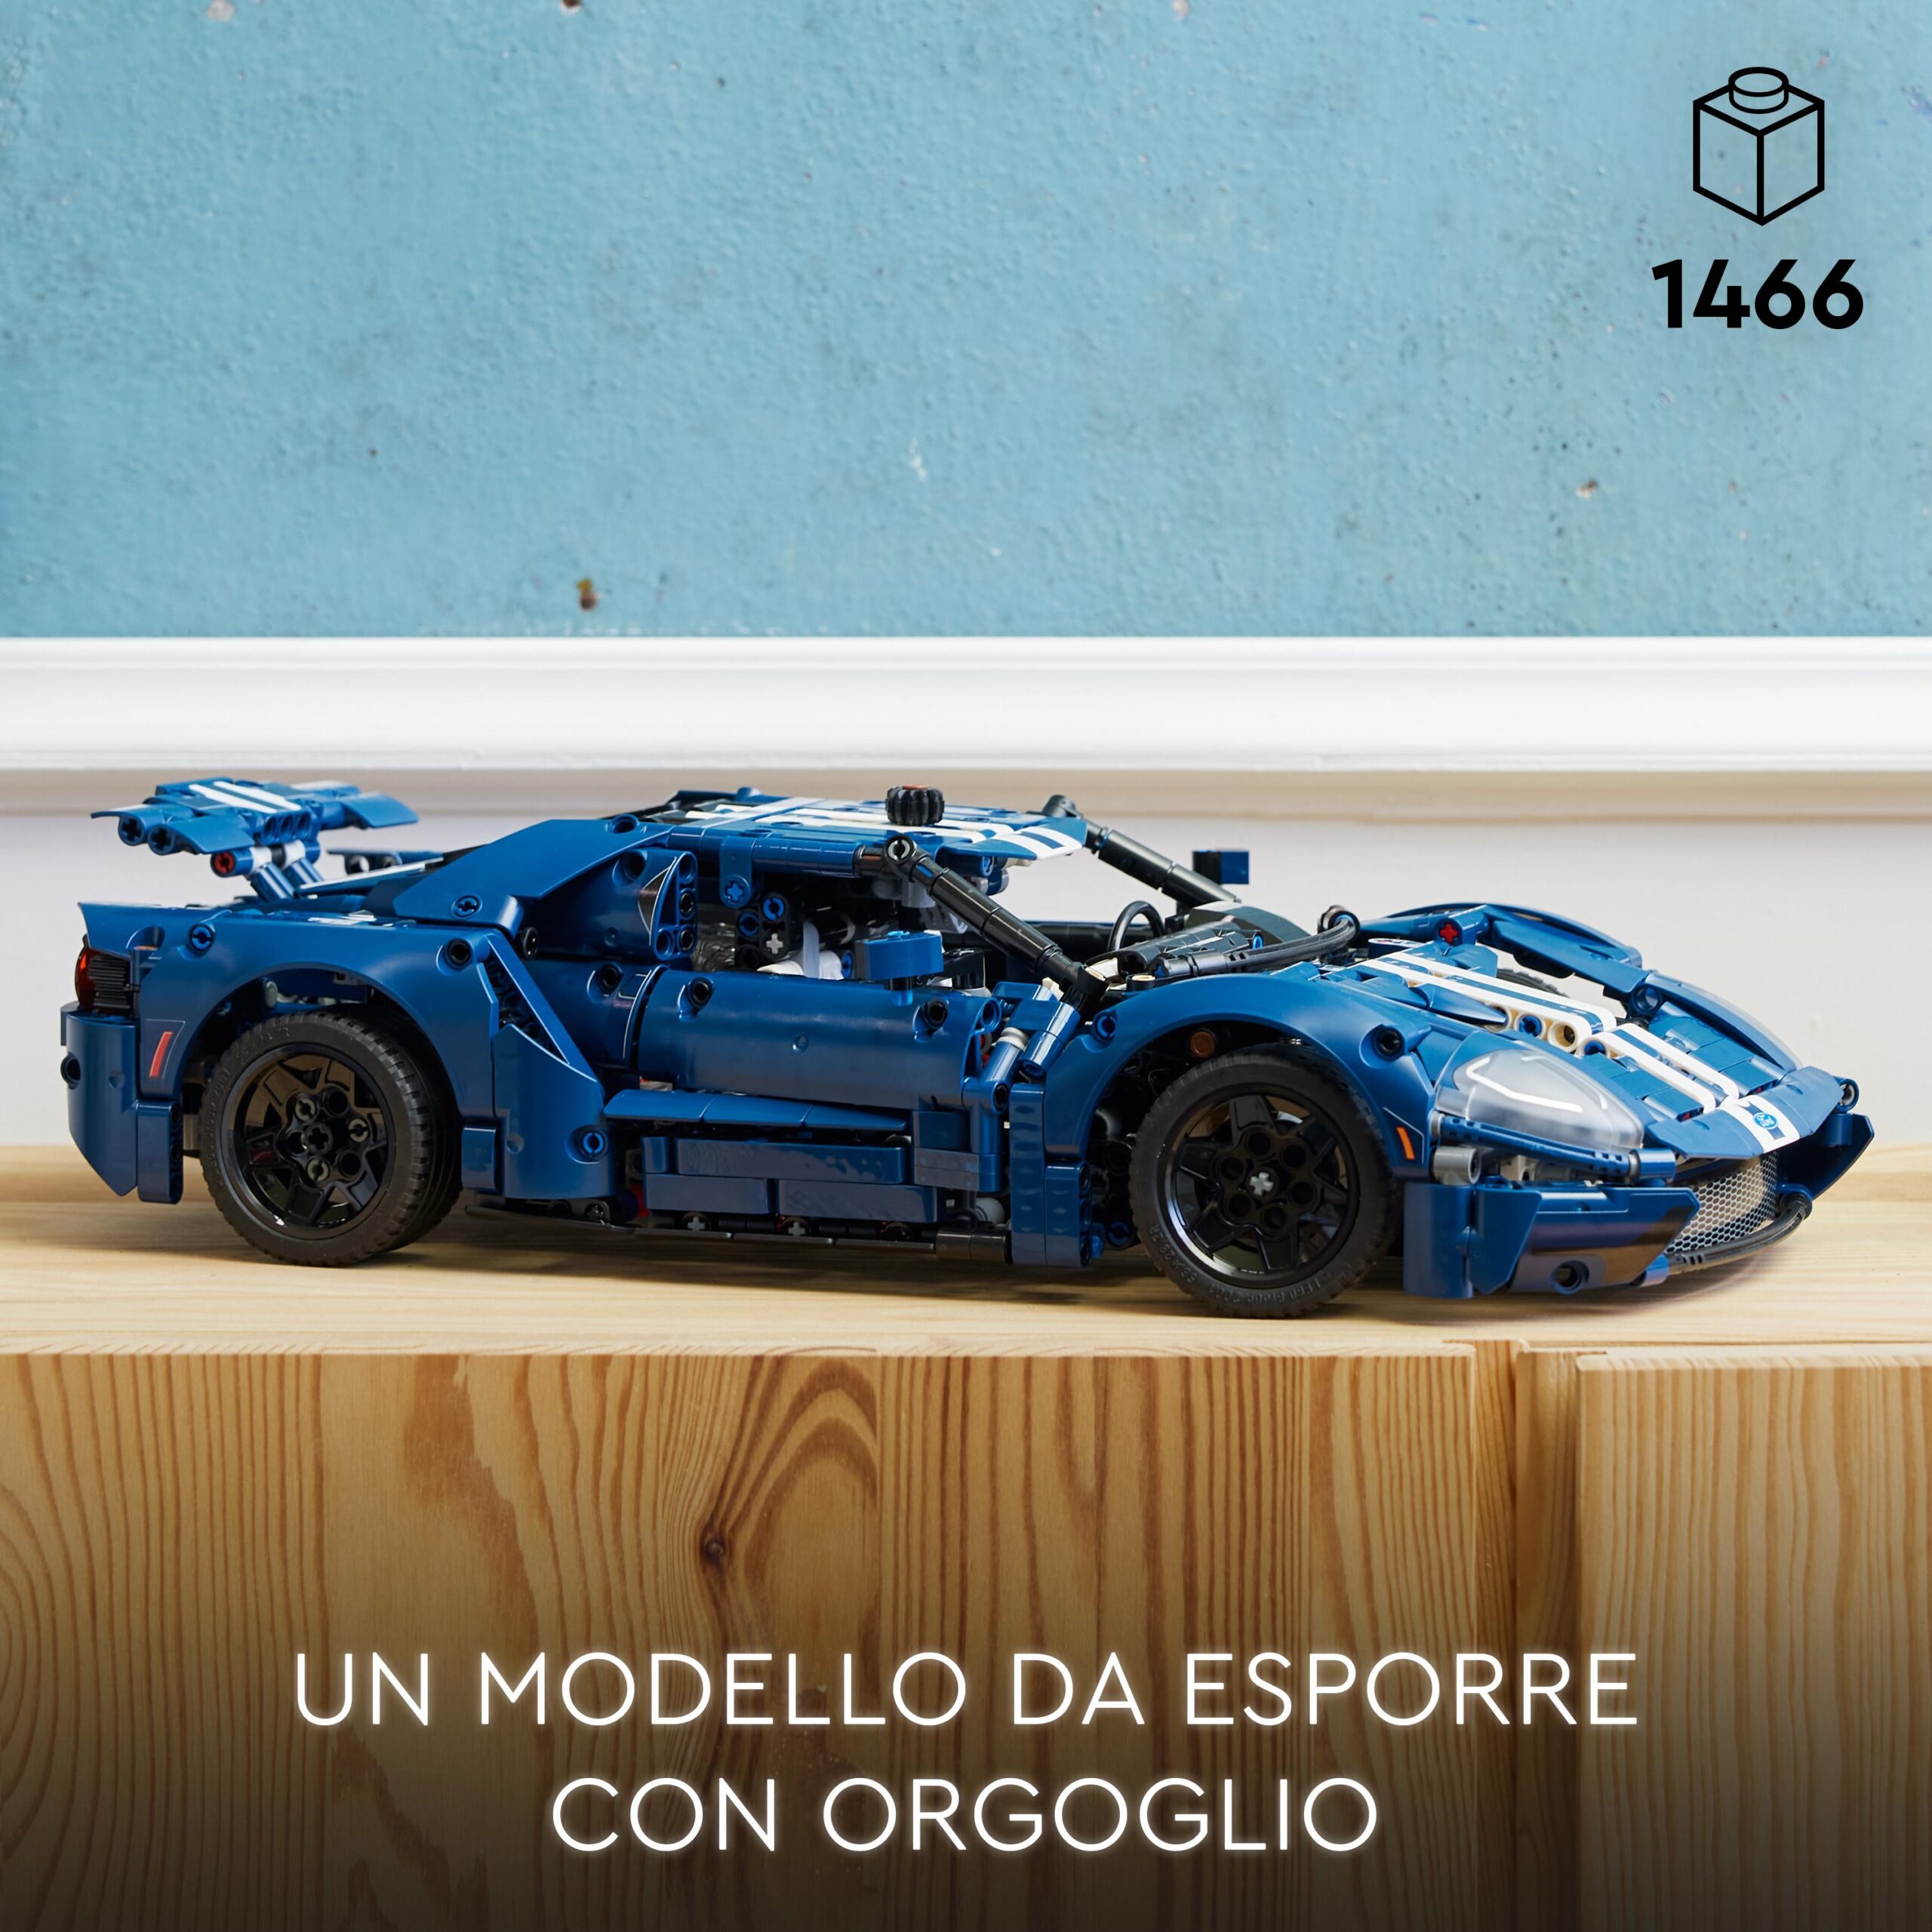 Lego technic 42154 ford gt 2022, kit modellino di auto da costruire per adulti, supercar in scala 1:12, set da collezione - LEGO TECHNIC